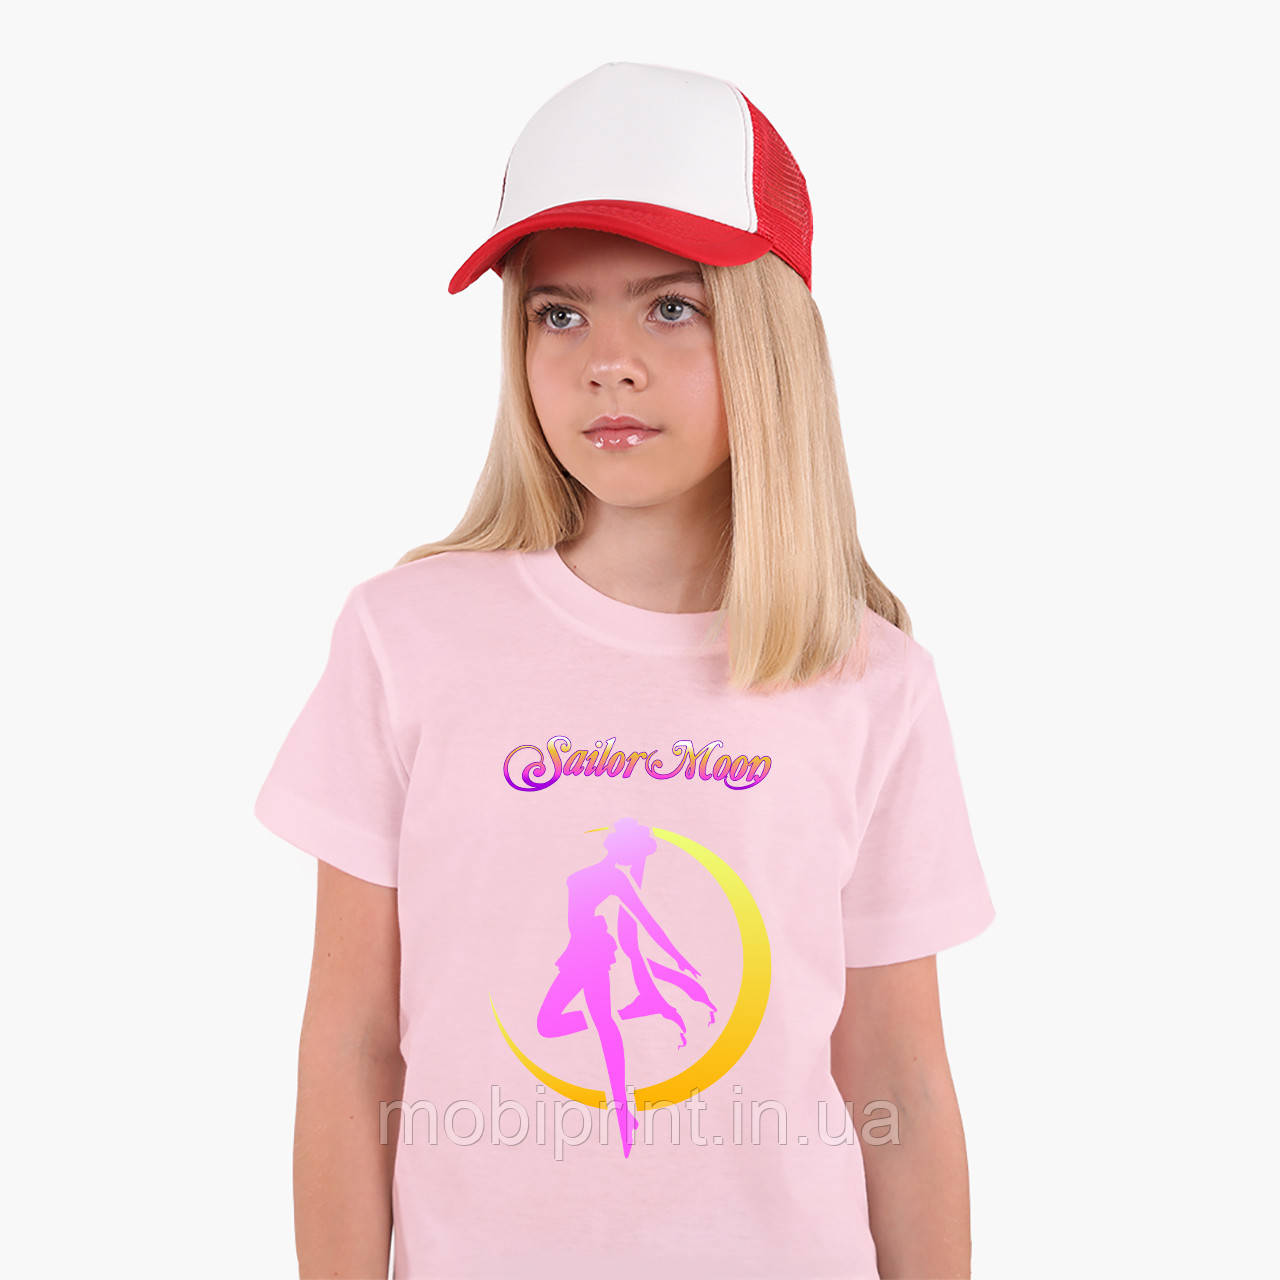 

Детская футболка для девочек Сейлор Мун (Sailor Moon) (25186-2658-PK) Розовый 134